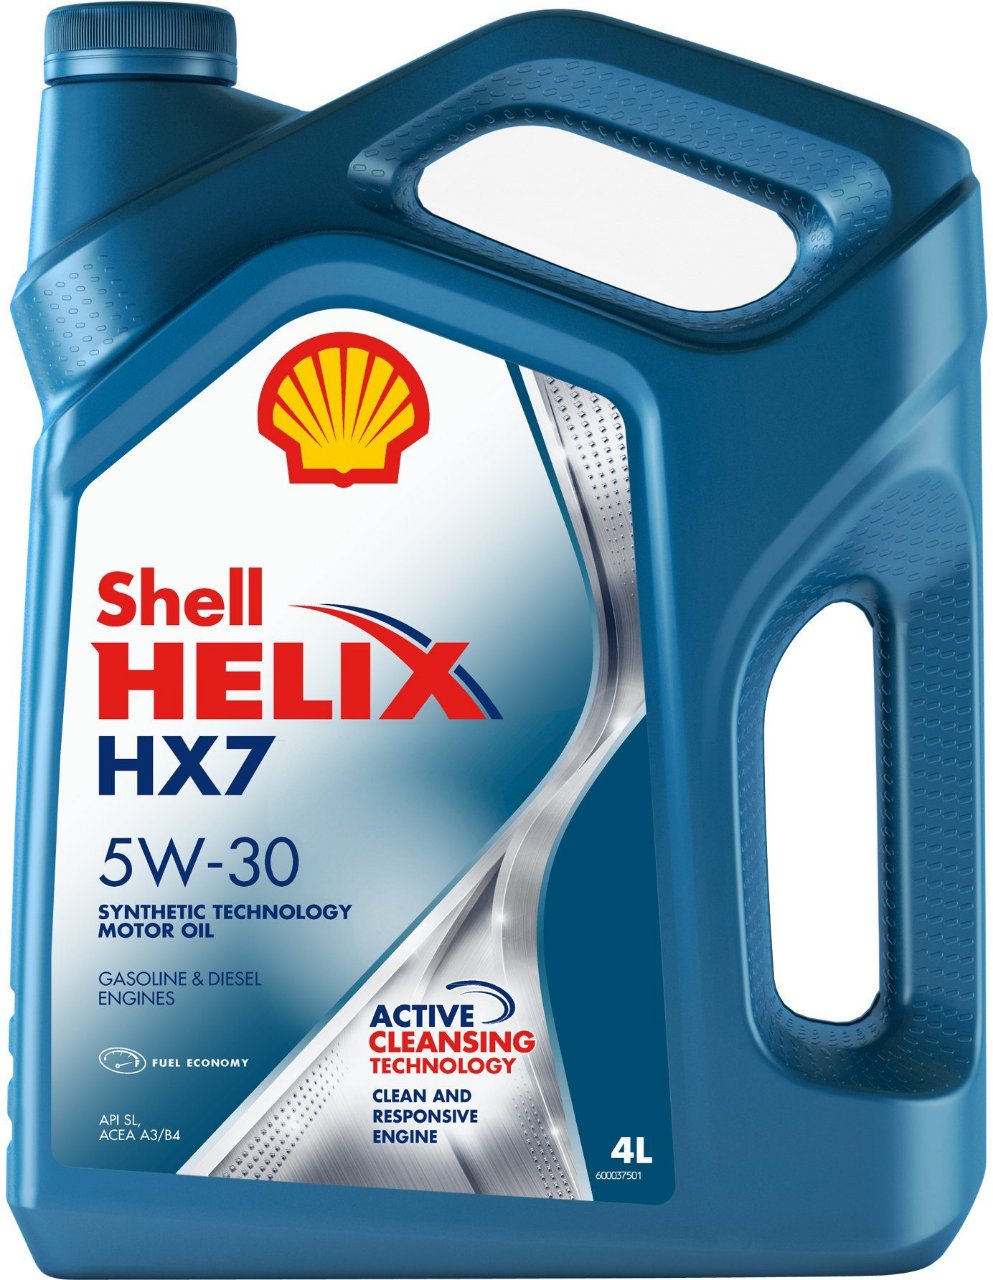 helix-hx7-5w-30.jpeg